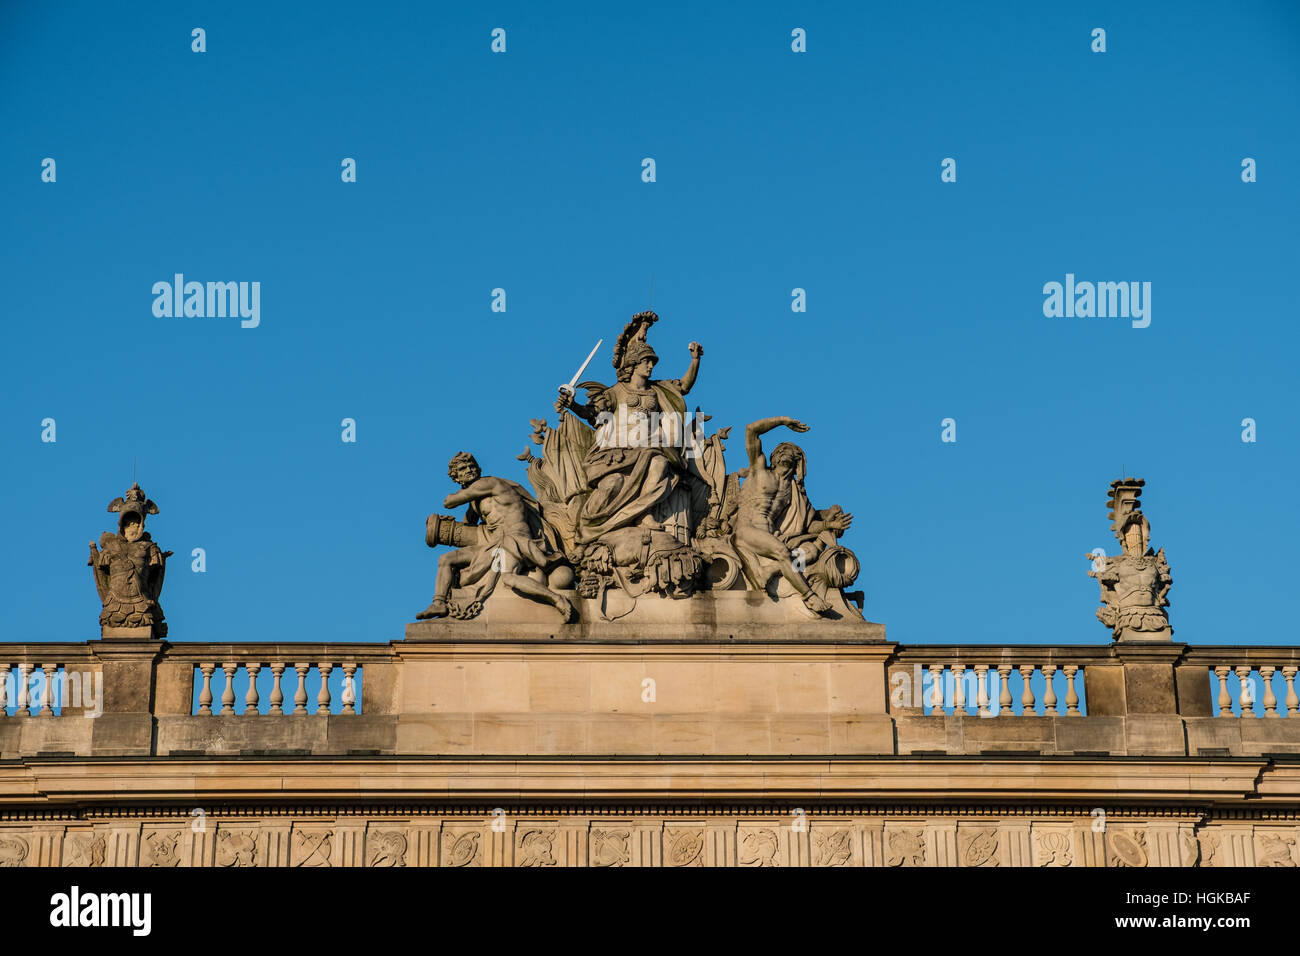 Mars, der Gott des Krieges Skulptur - Zeughaus, Berlin, Deutschland Stockfoto